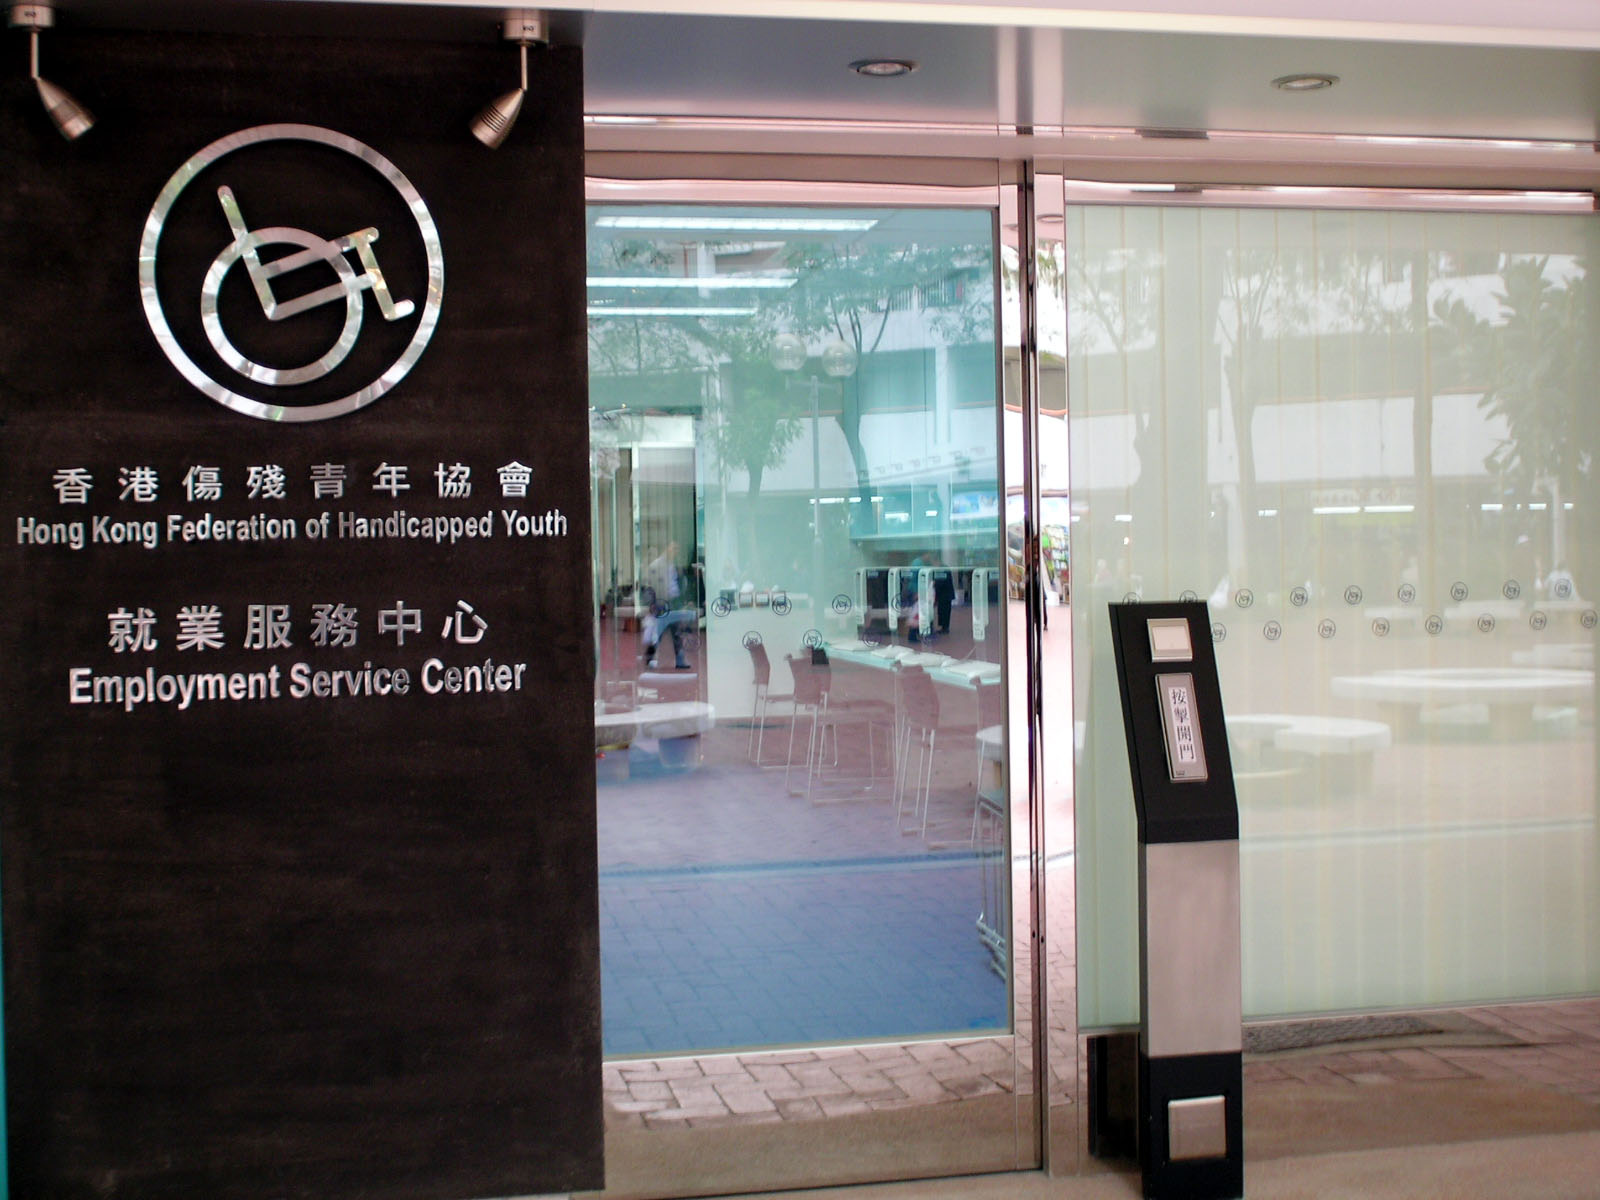 相片 1: 香港傷殘青年協會就業服務中心